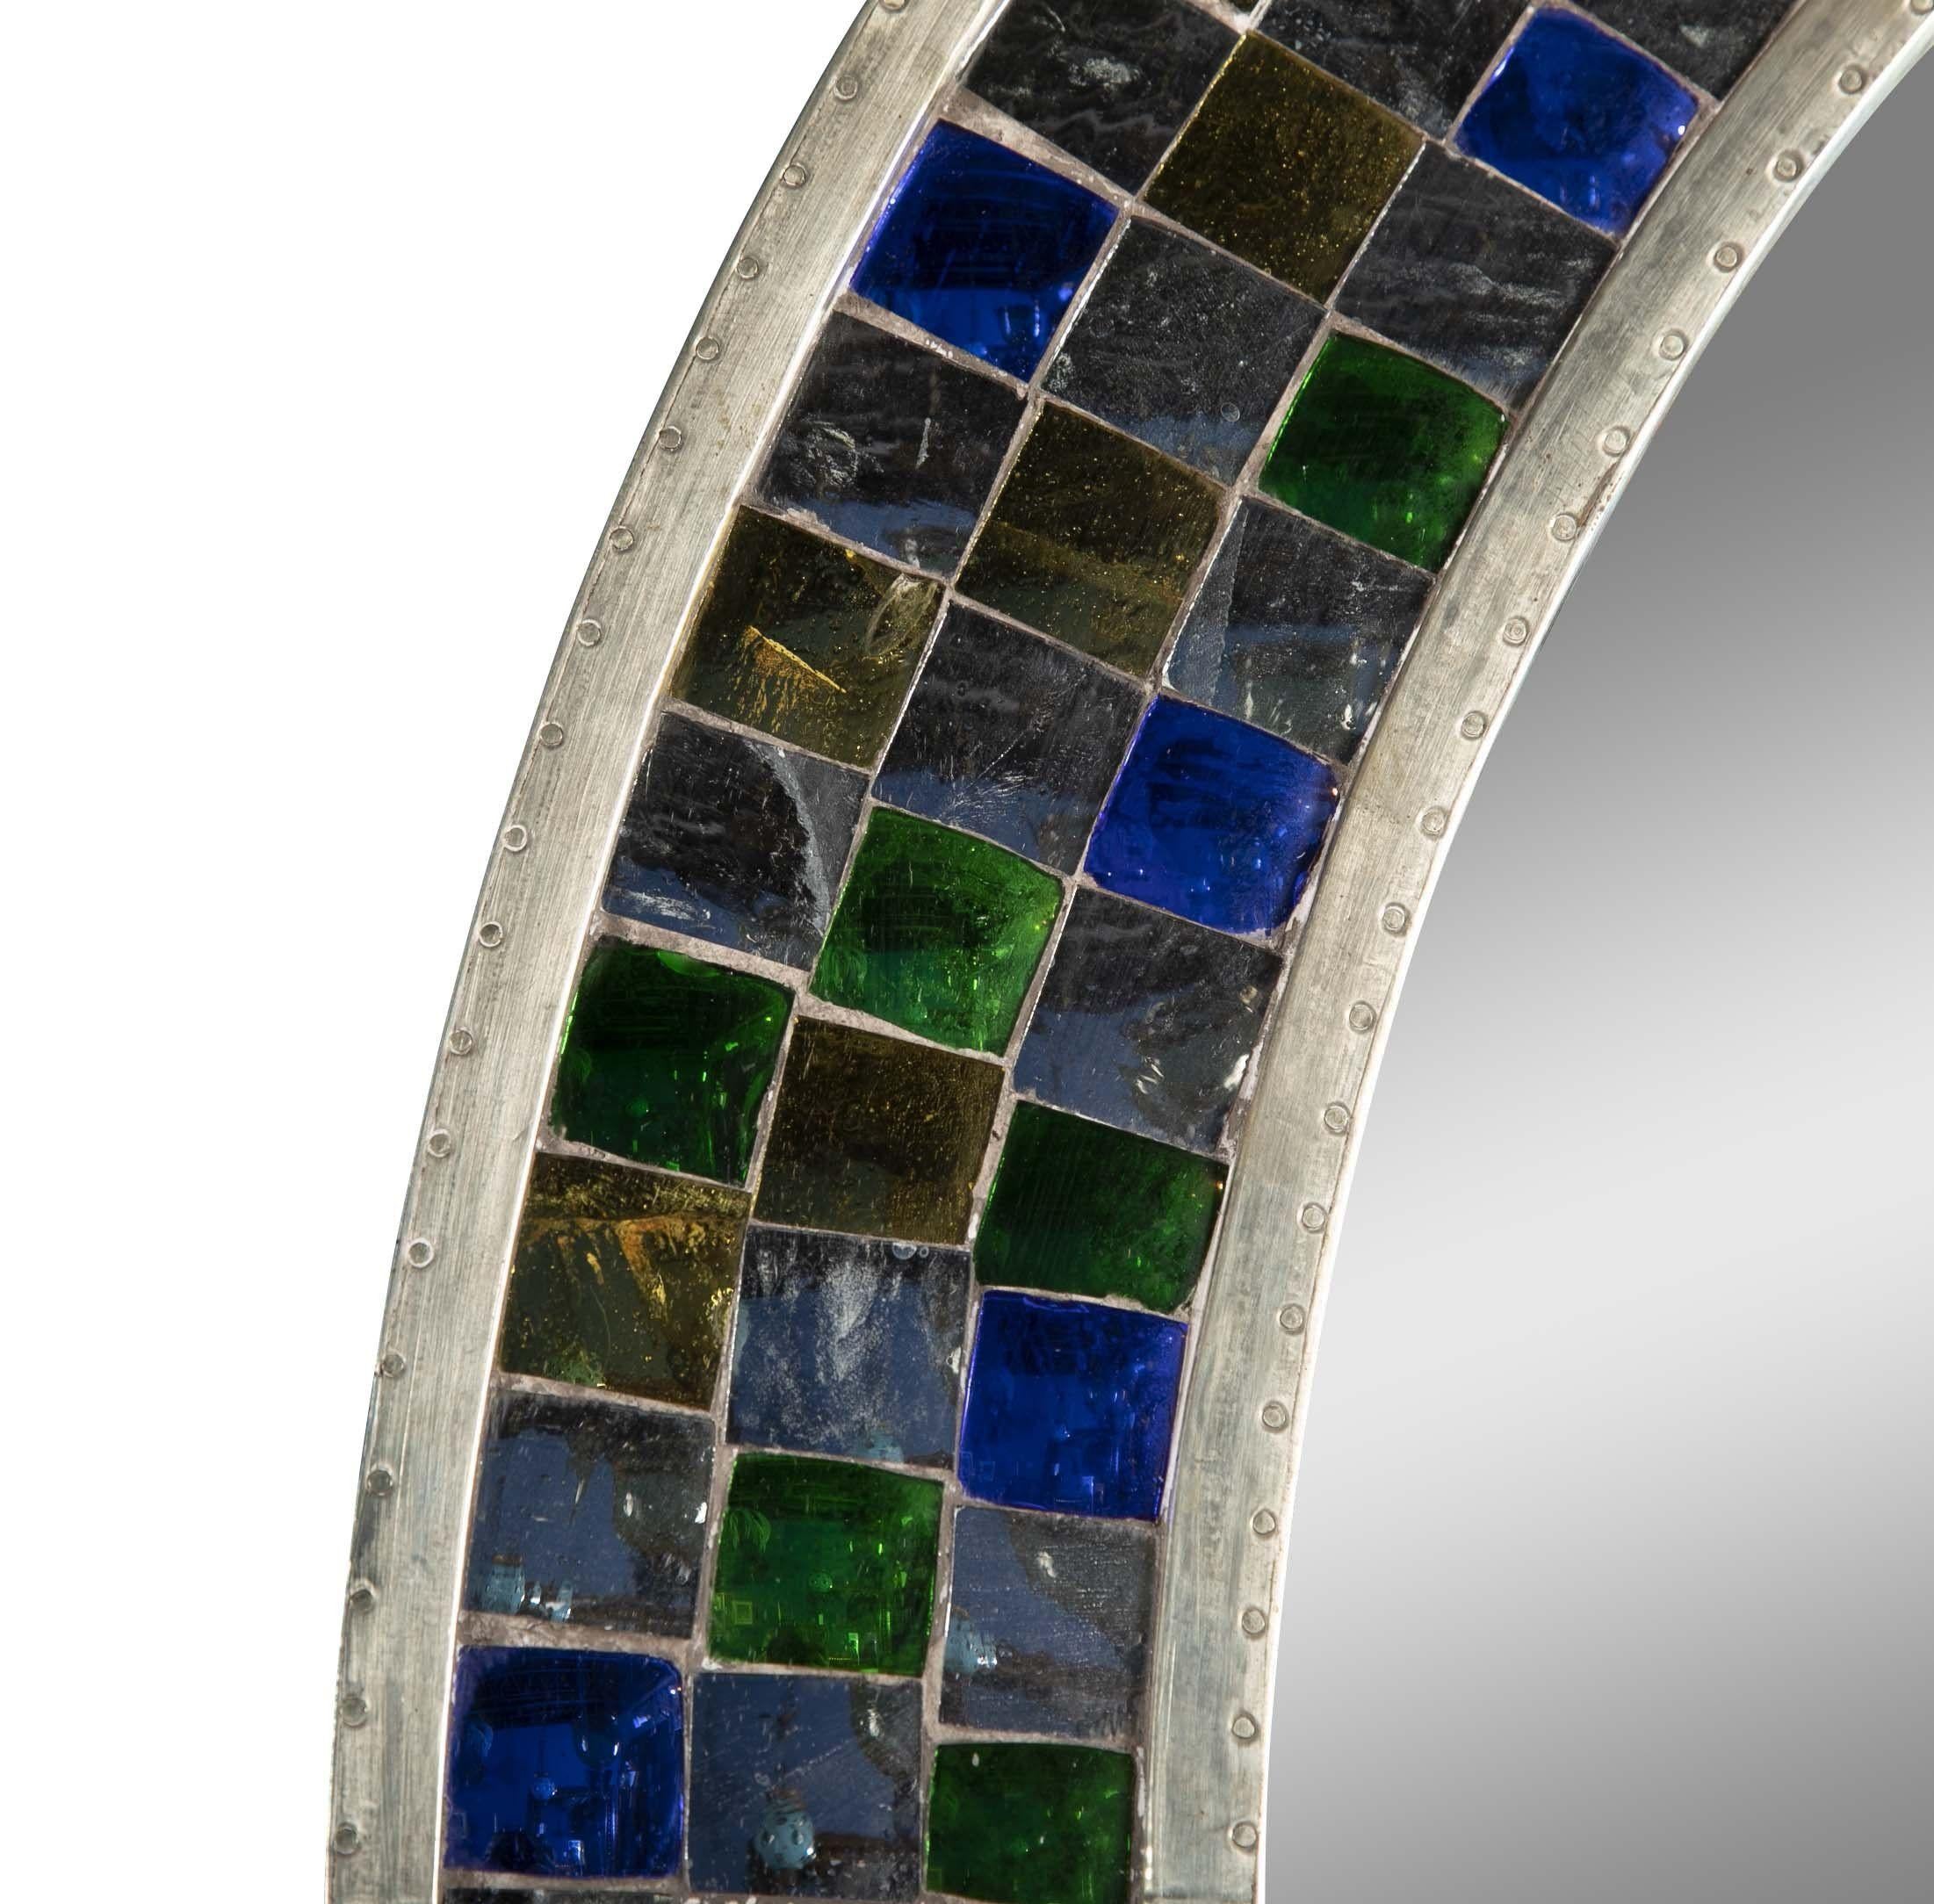 Mehrfarbiger kugelförmiger Spiegel Mosaik über Teakholz-Spiegelrahmen. Tikria ist eine jahrhundertealte Mosaiktechnik, die in vielen Palastgebäuden der Moguln und Rajputen zu finden ist. Die Mosaikplatten werden aus den Bruchstücken einer